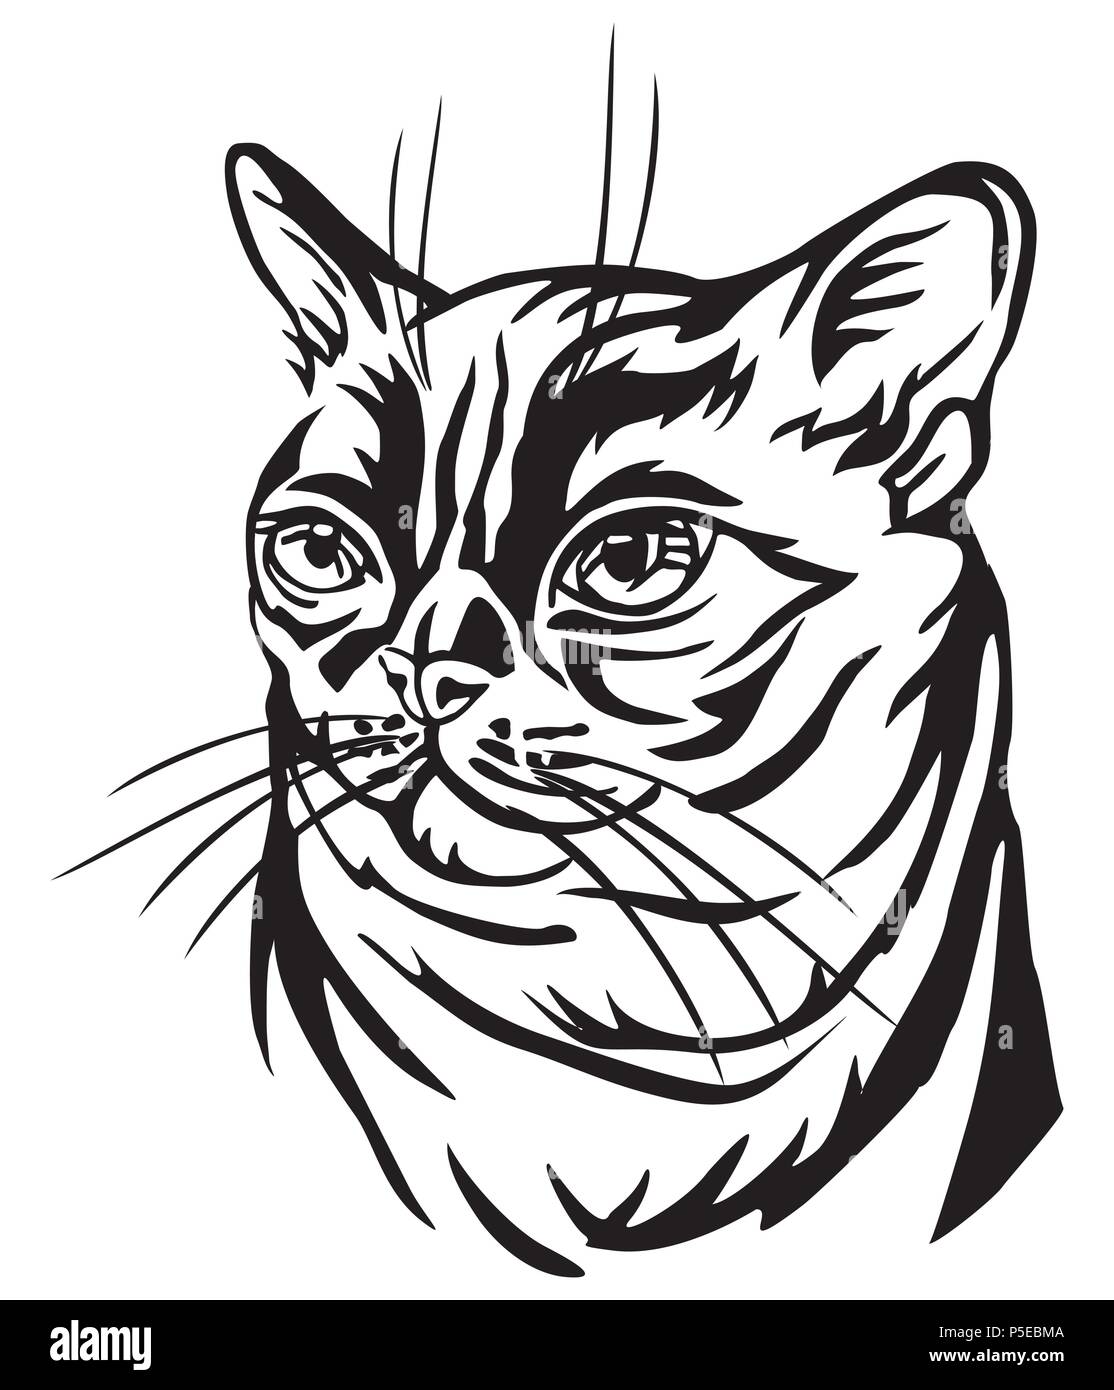 Dekorative Portrait im Profil der Burmese Cat, Vektor isoliert Abbildung in schwarz auf weißem Hintergrund Stock Vektor